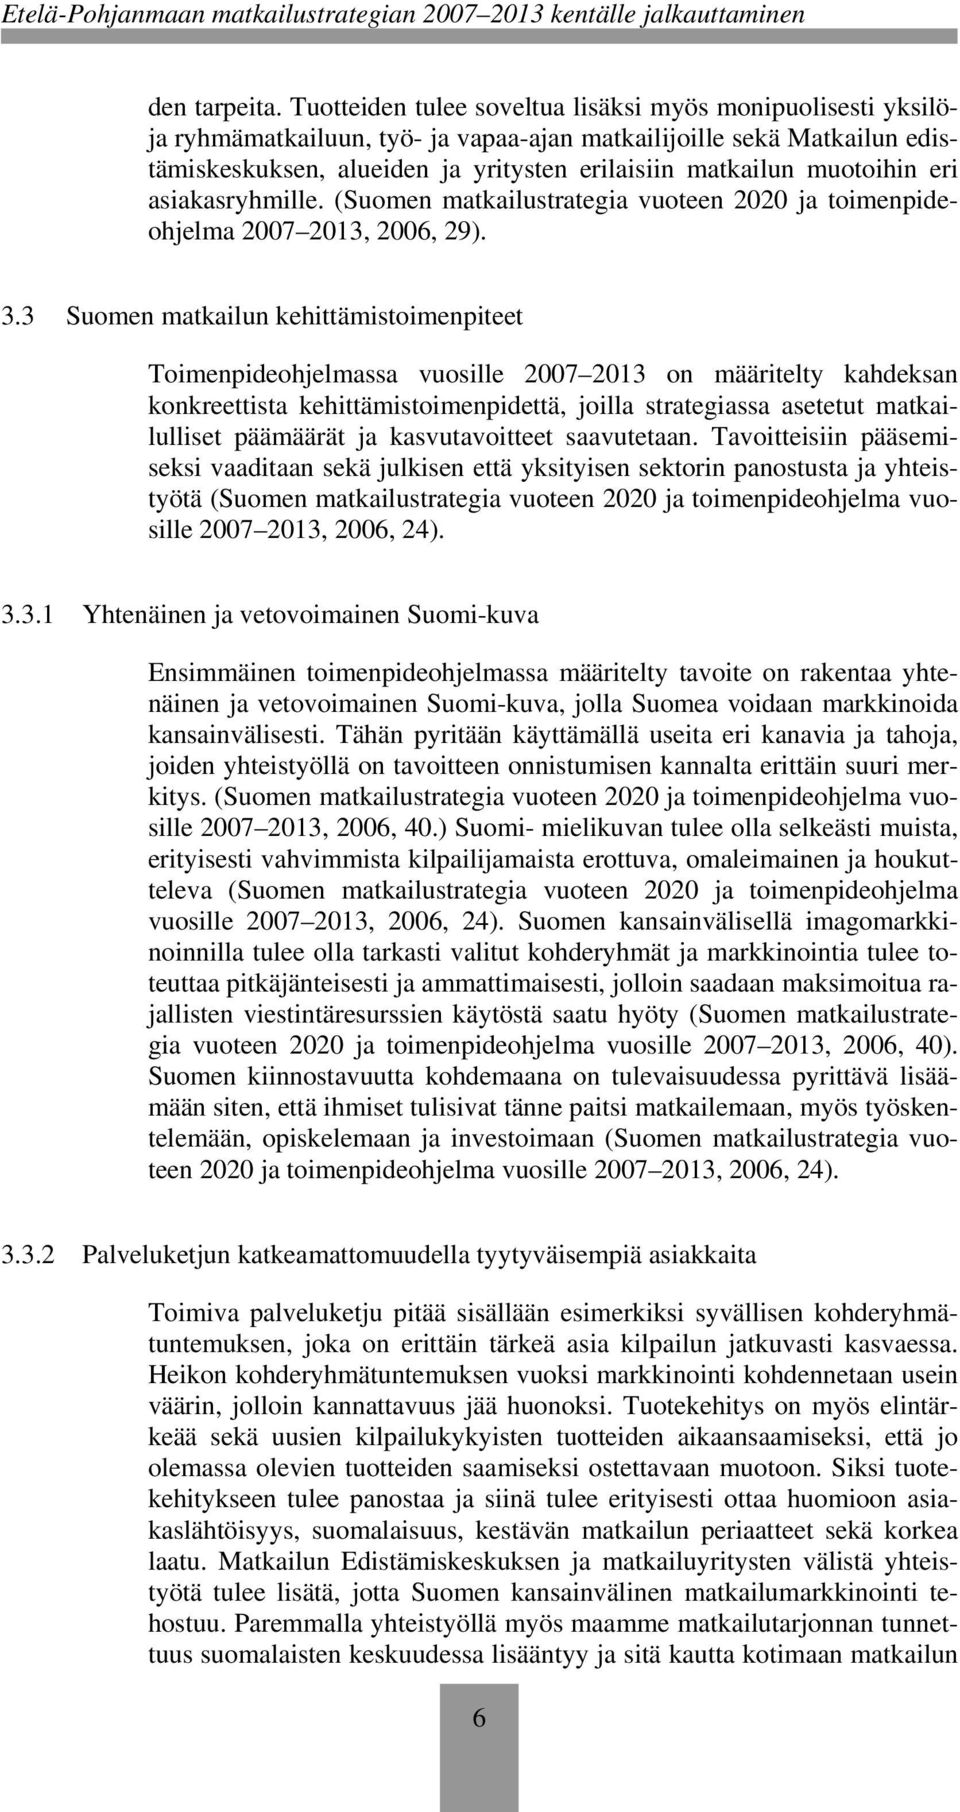 muotoihin eri asiakasryhmille. (Suomen matkailustrategia vuoteen 2020 ja toimenpideohjelma 2007 2013, 2006, 29). 3.